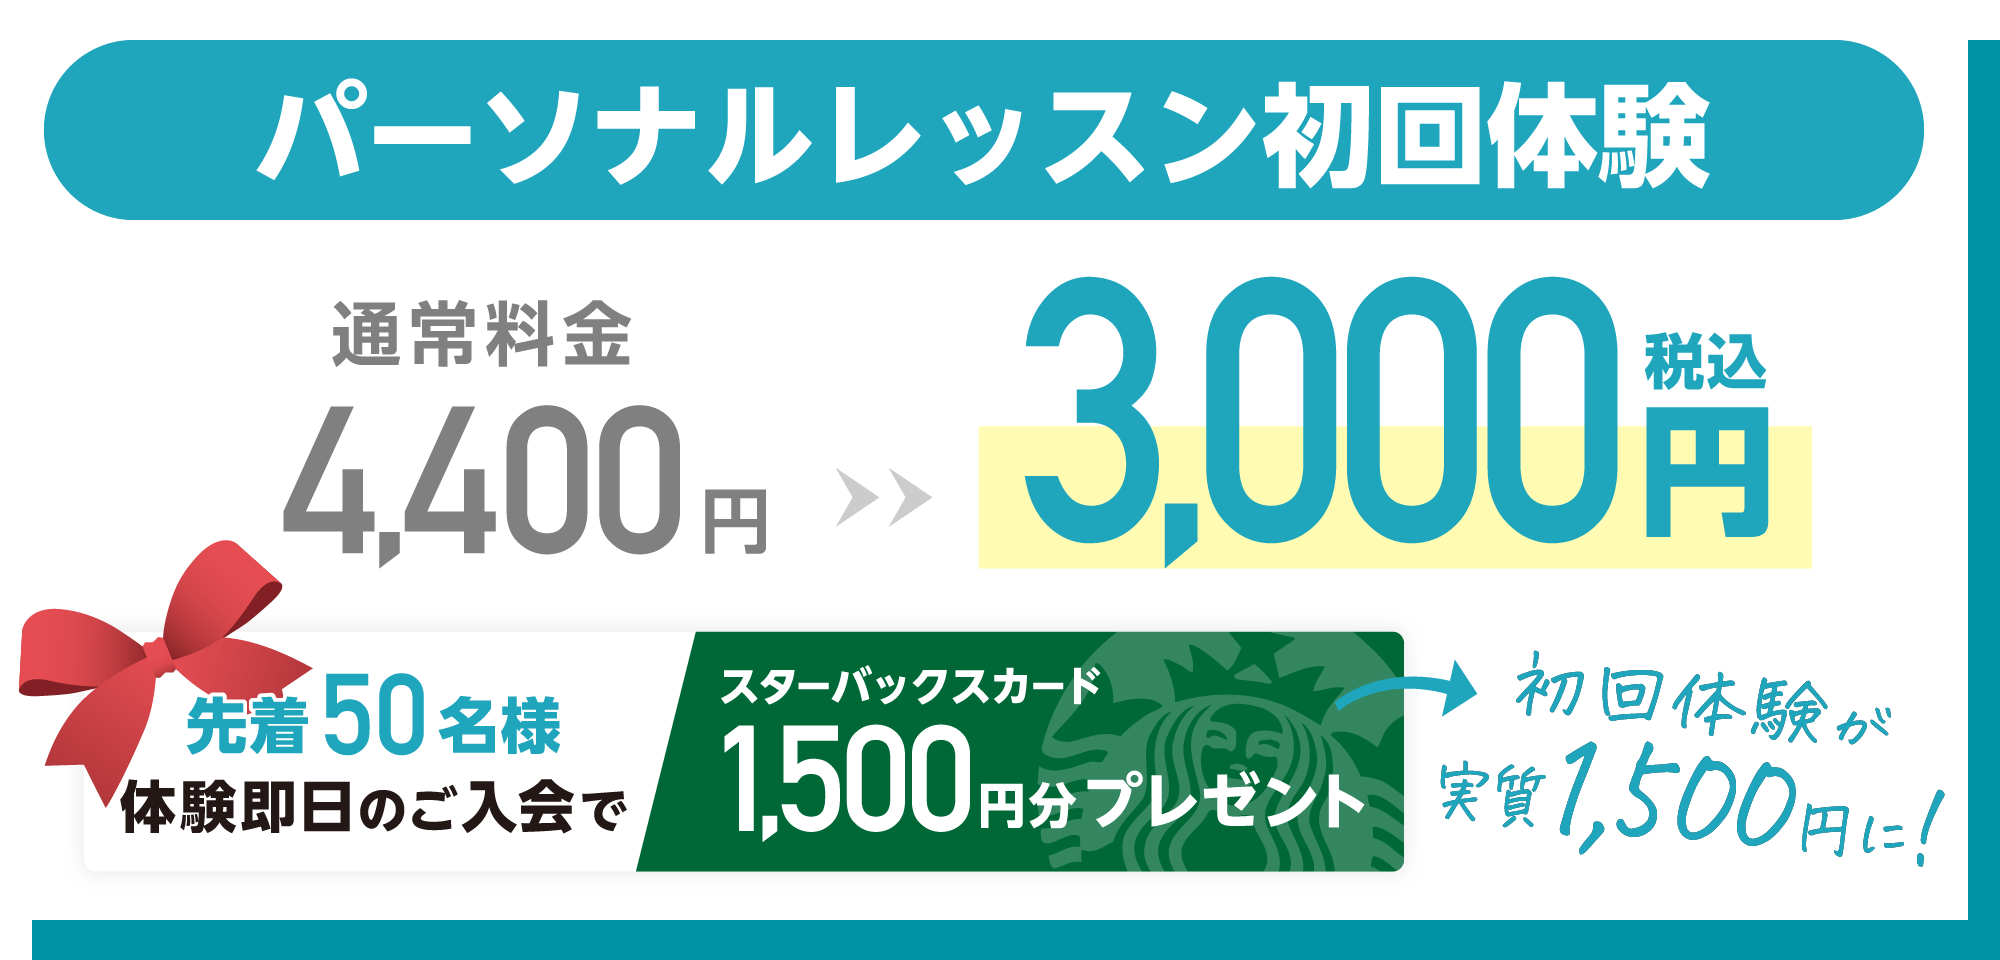 ピラティスアクス浅草蔵前店のパーソナルレッスン初回体験3000円キャンペーン